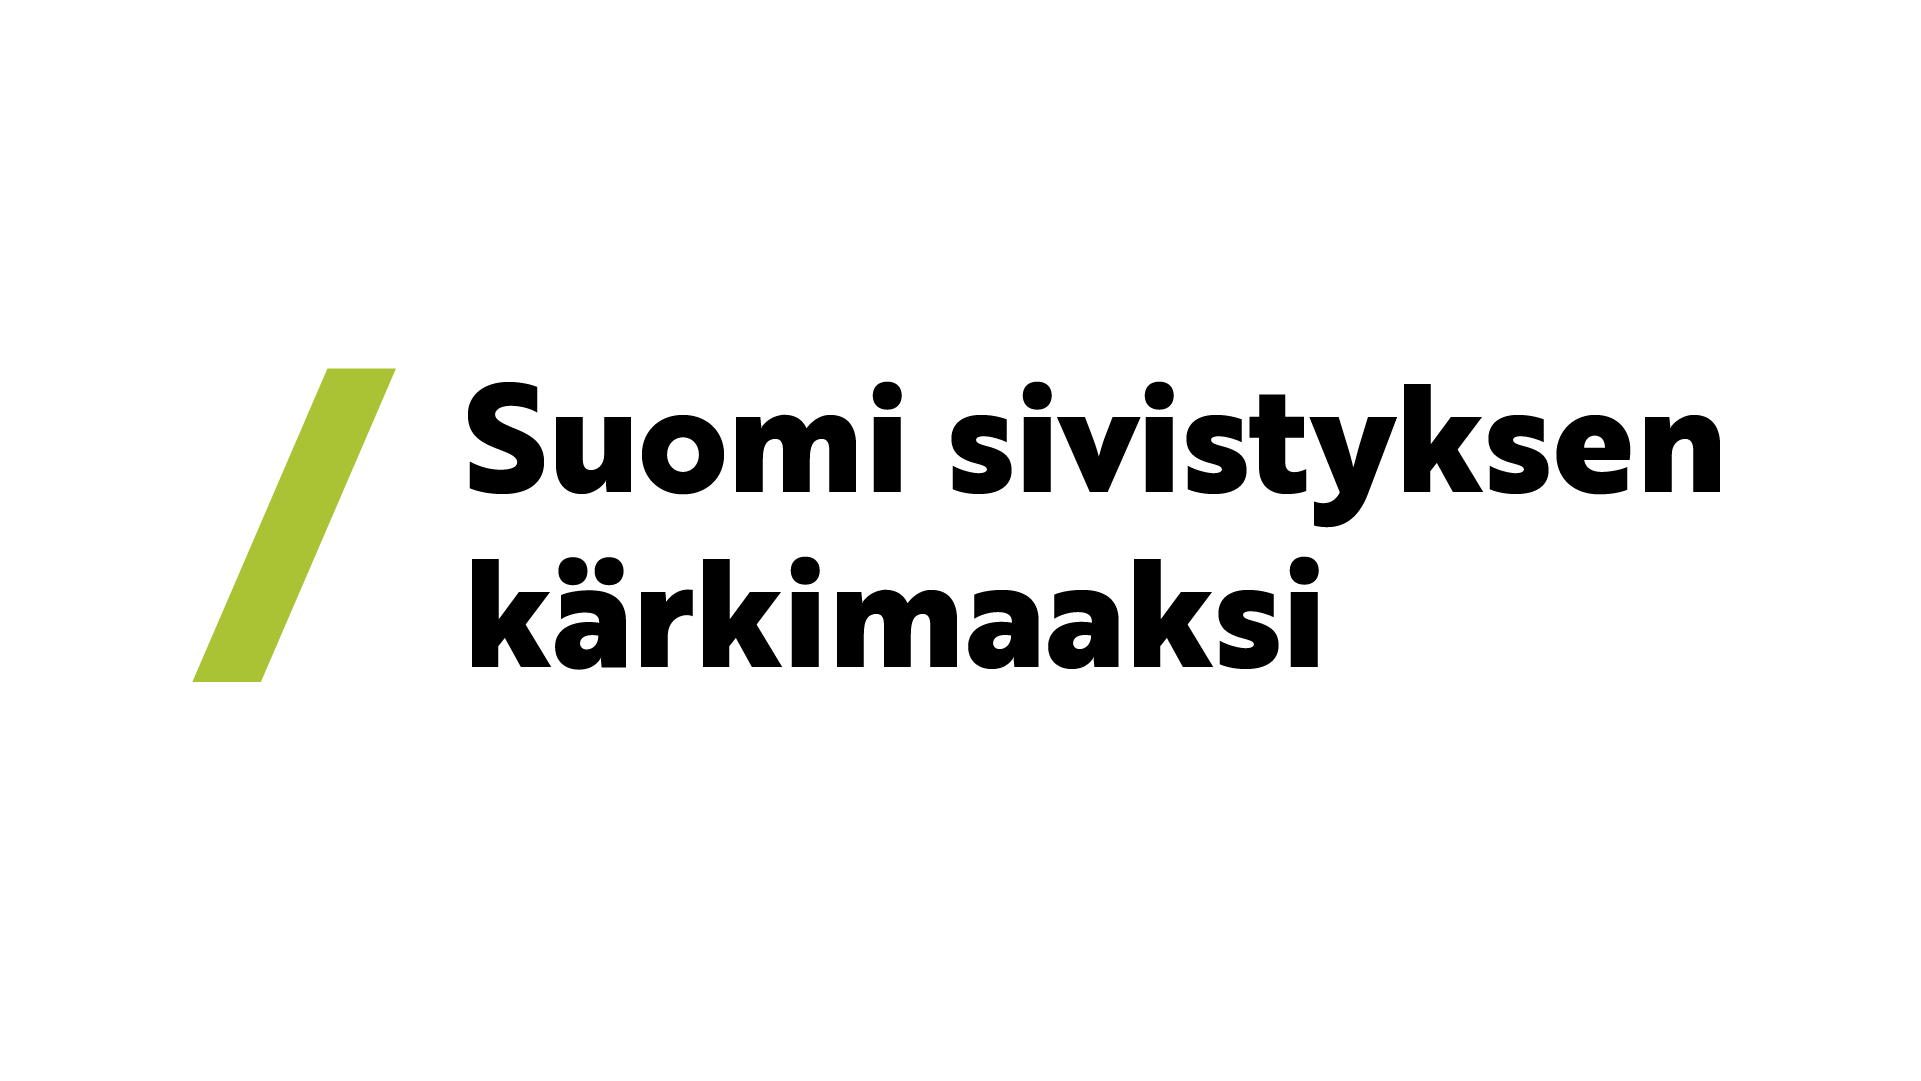 Tekstitunnus, jossa lukee Suomi sivistyksen kärkimaaksi.